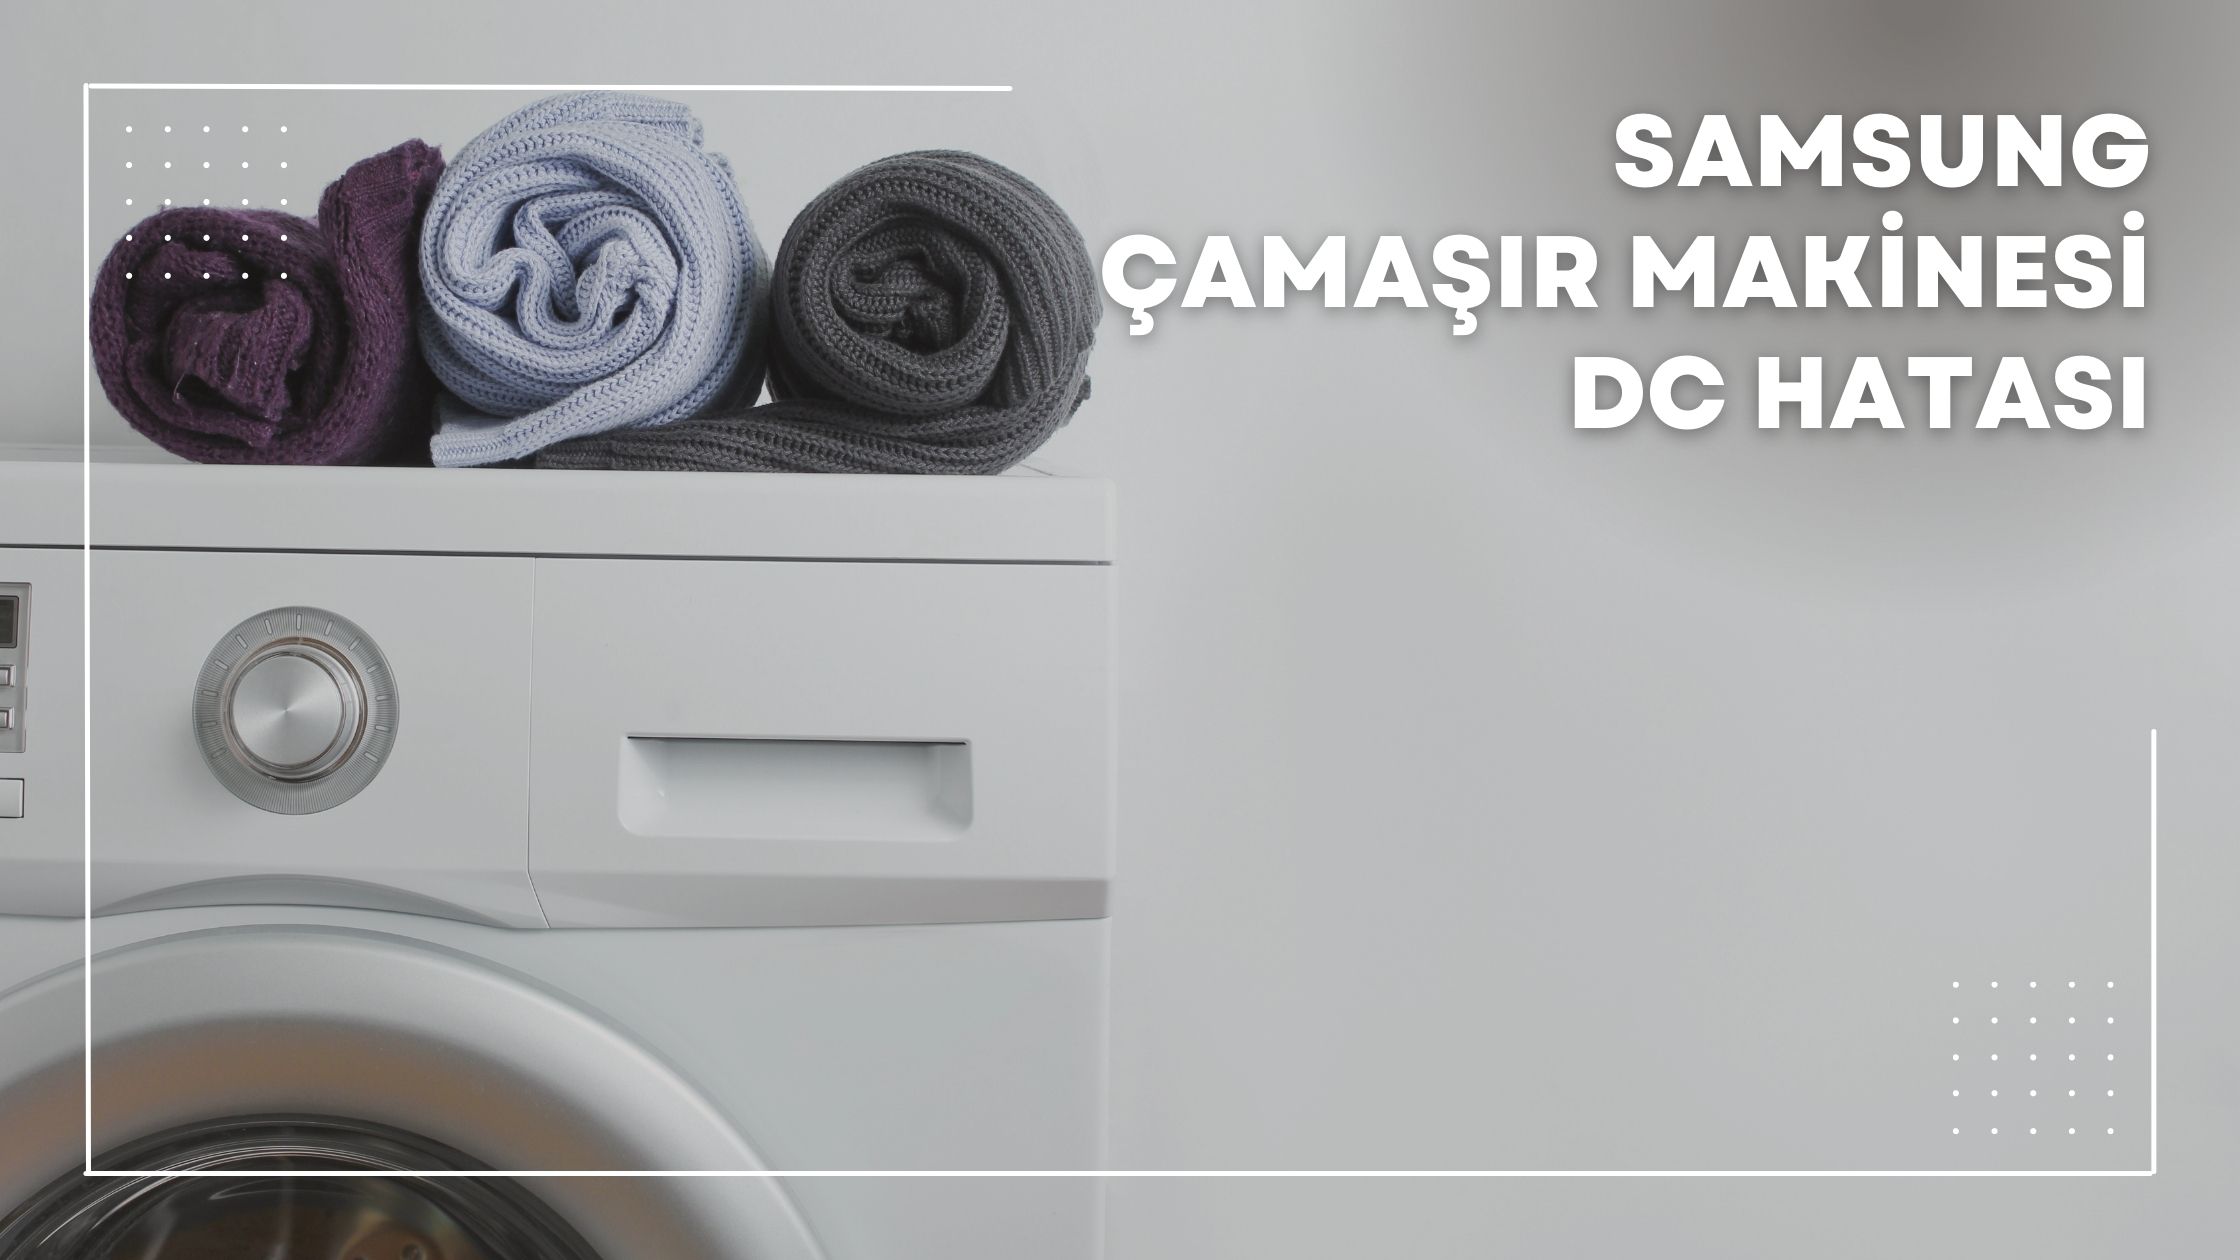 Samsung Çamaşır Makinesi DC Hatası